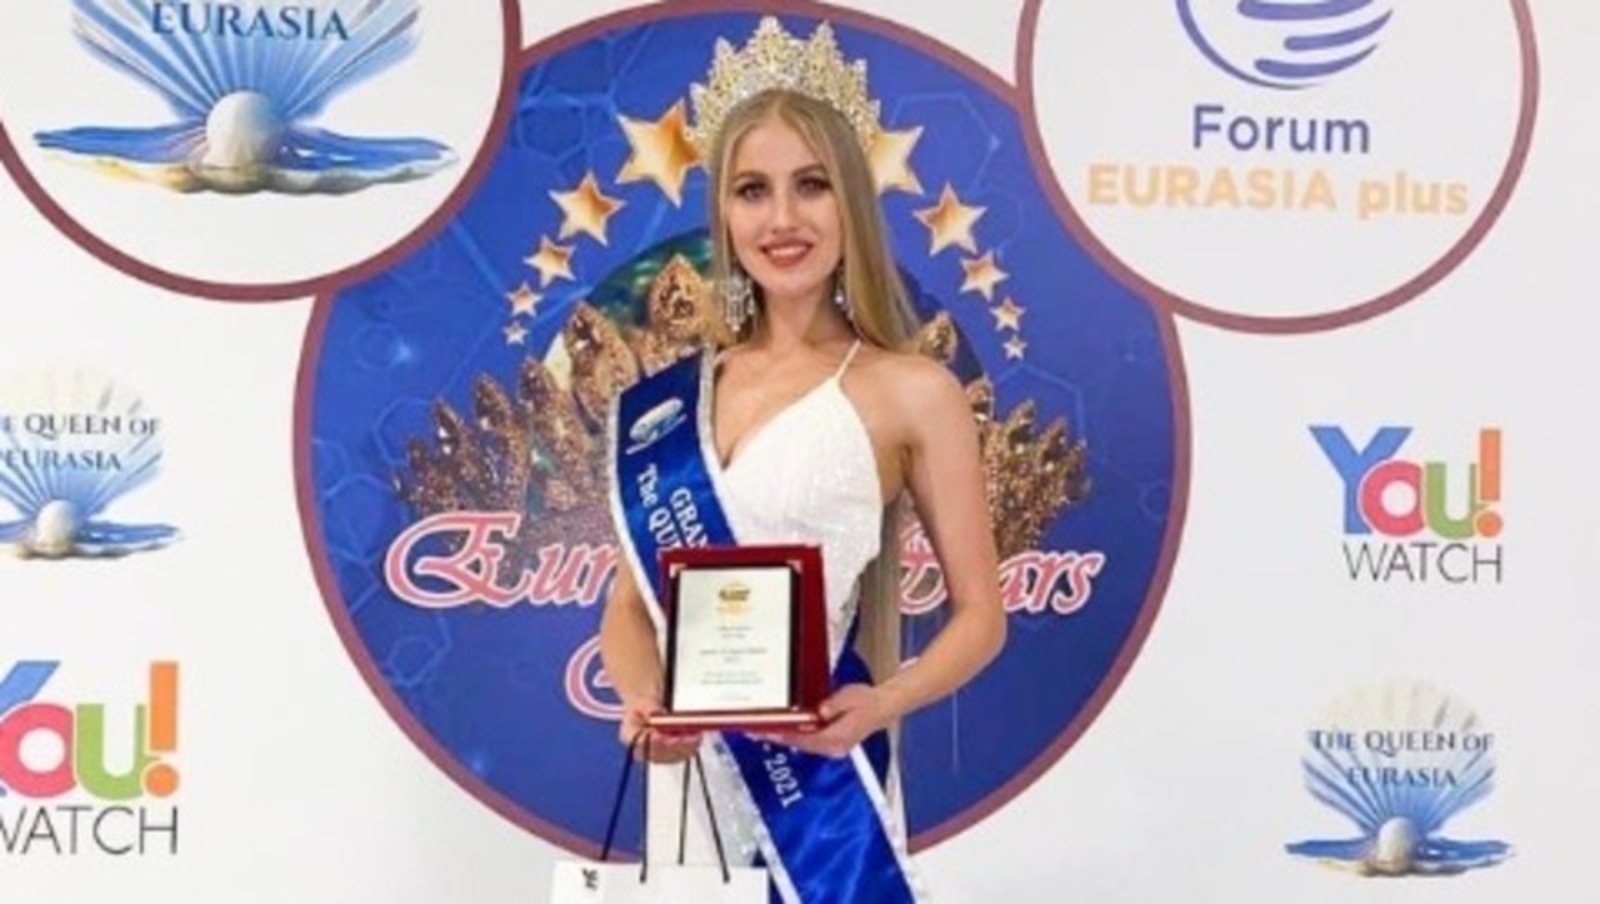 Альбина Шәйхелисламова «Евразия королеваһы-2021» халыҡ-ара гүзәллек конкурсында еңеүсе булды